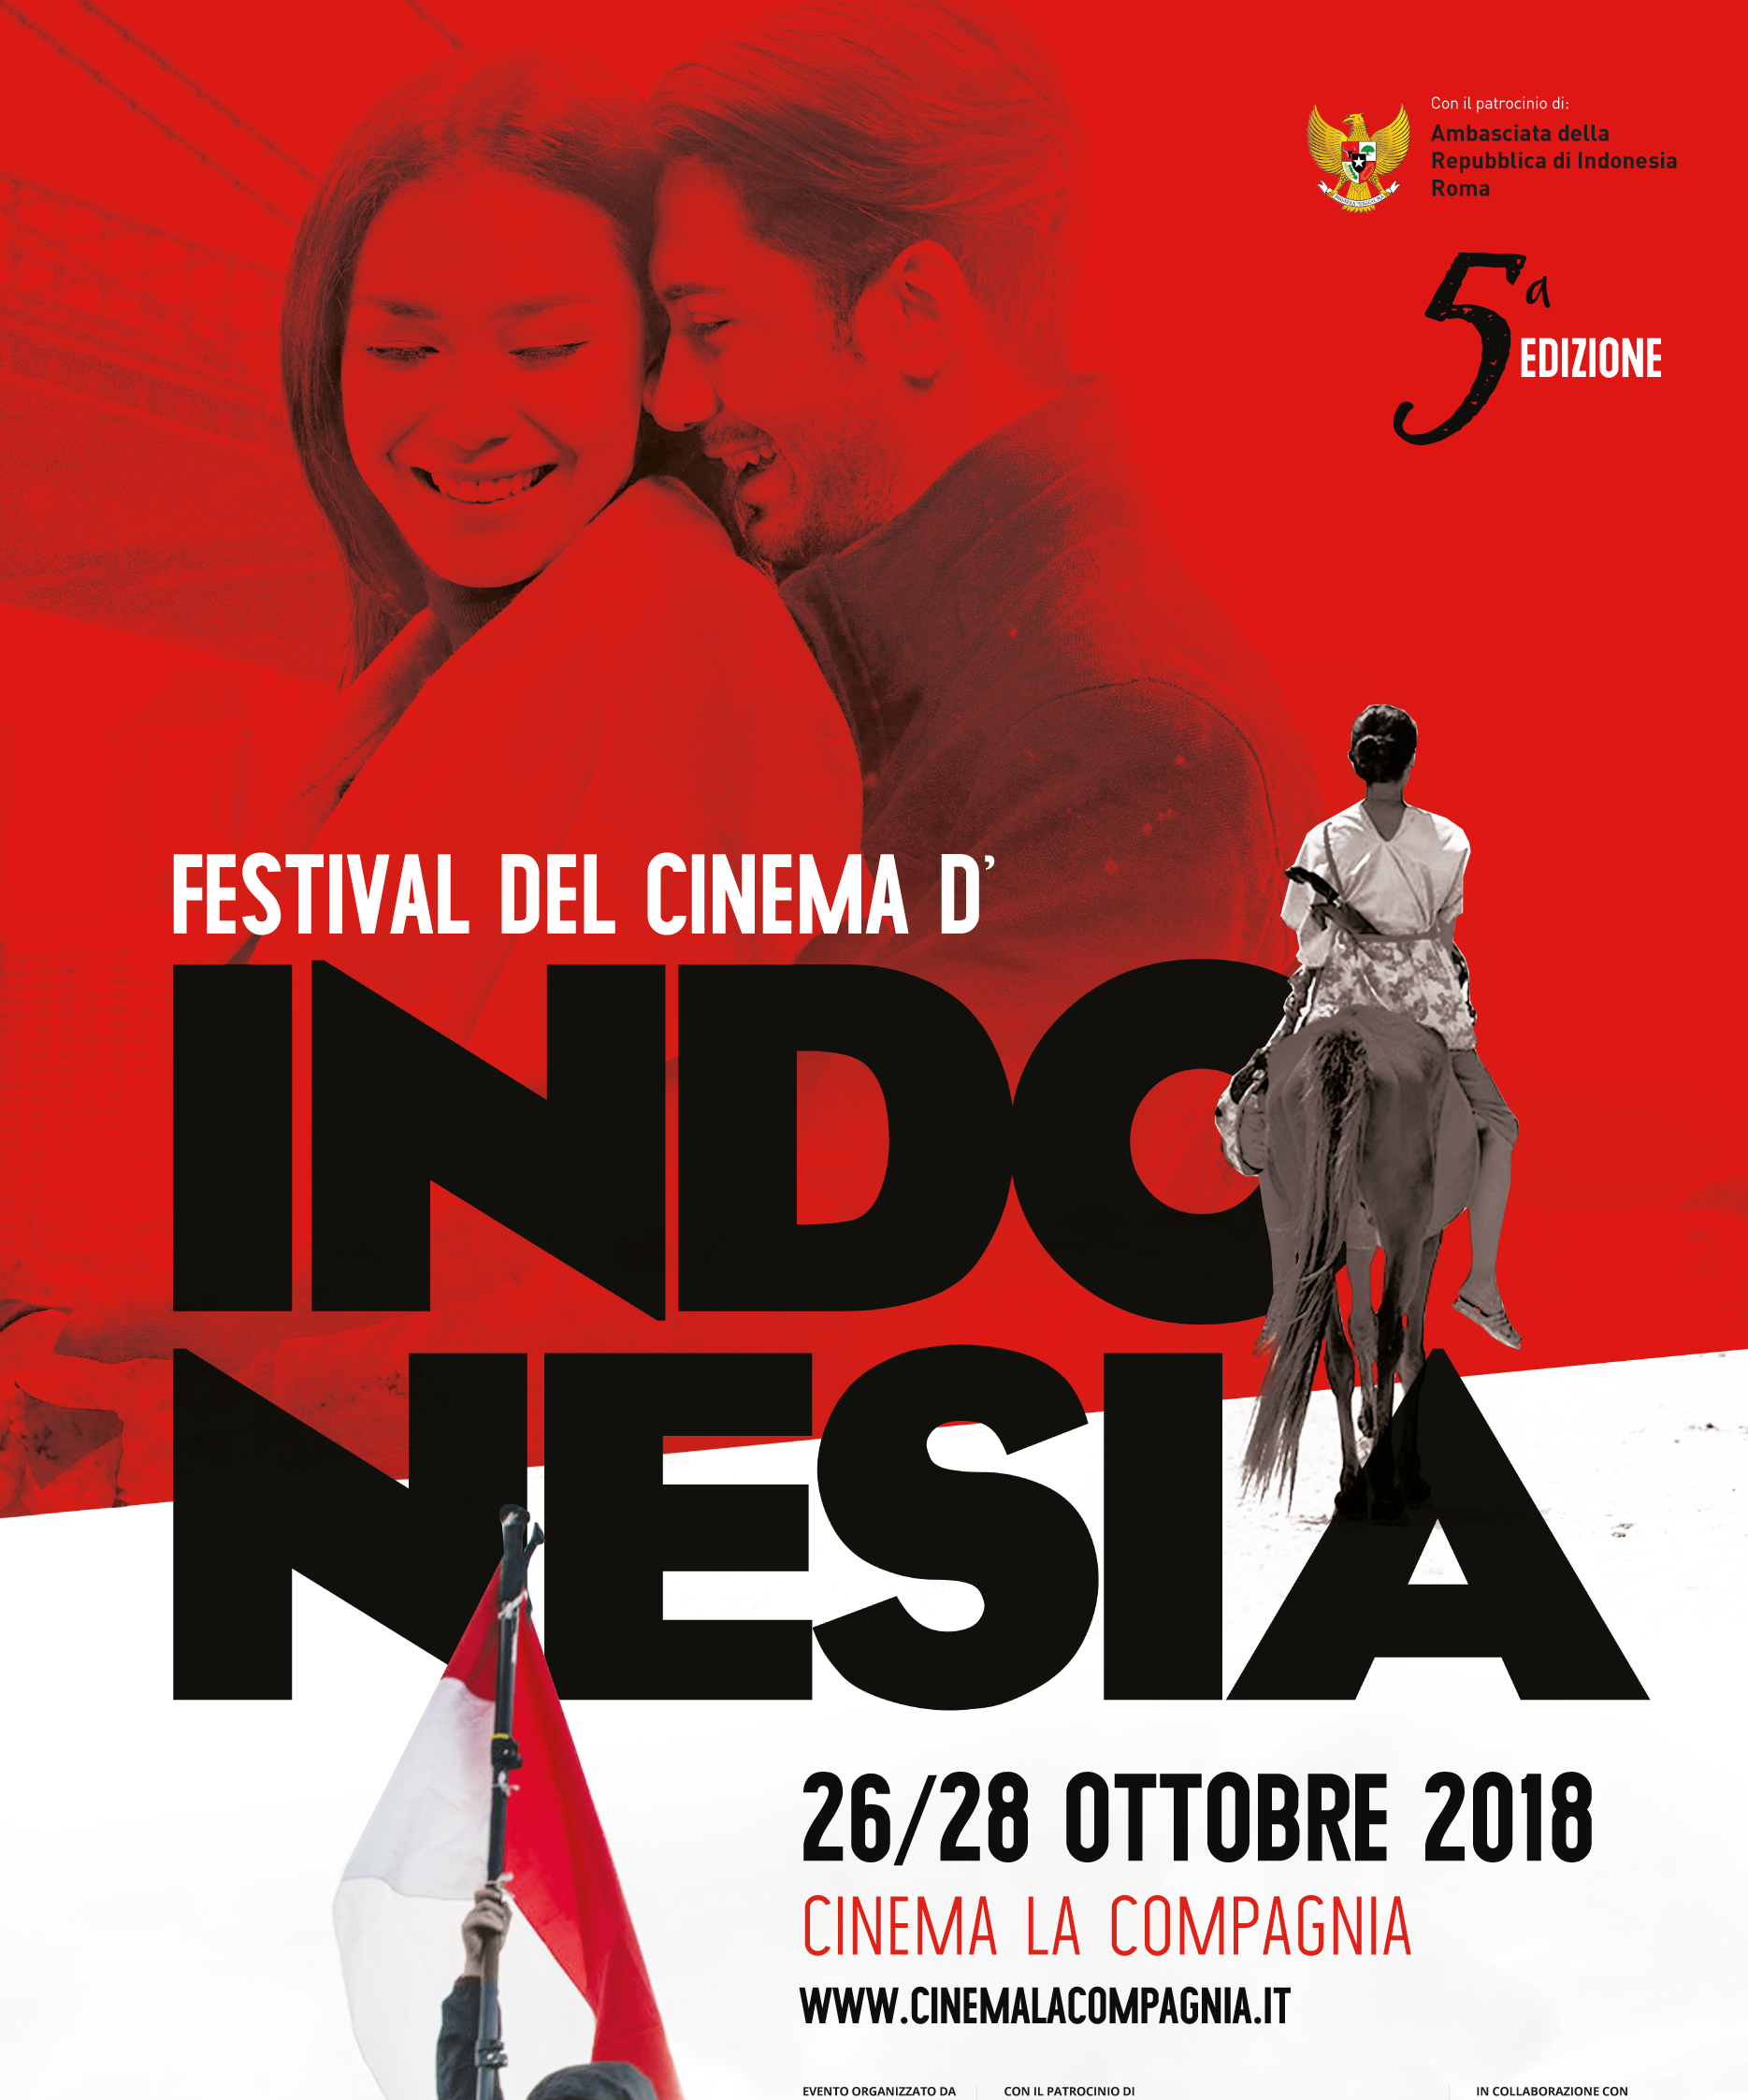 Festival Del Cinema Dindonesia V Edizione Dal 26 Al 28